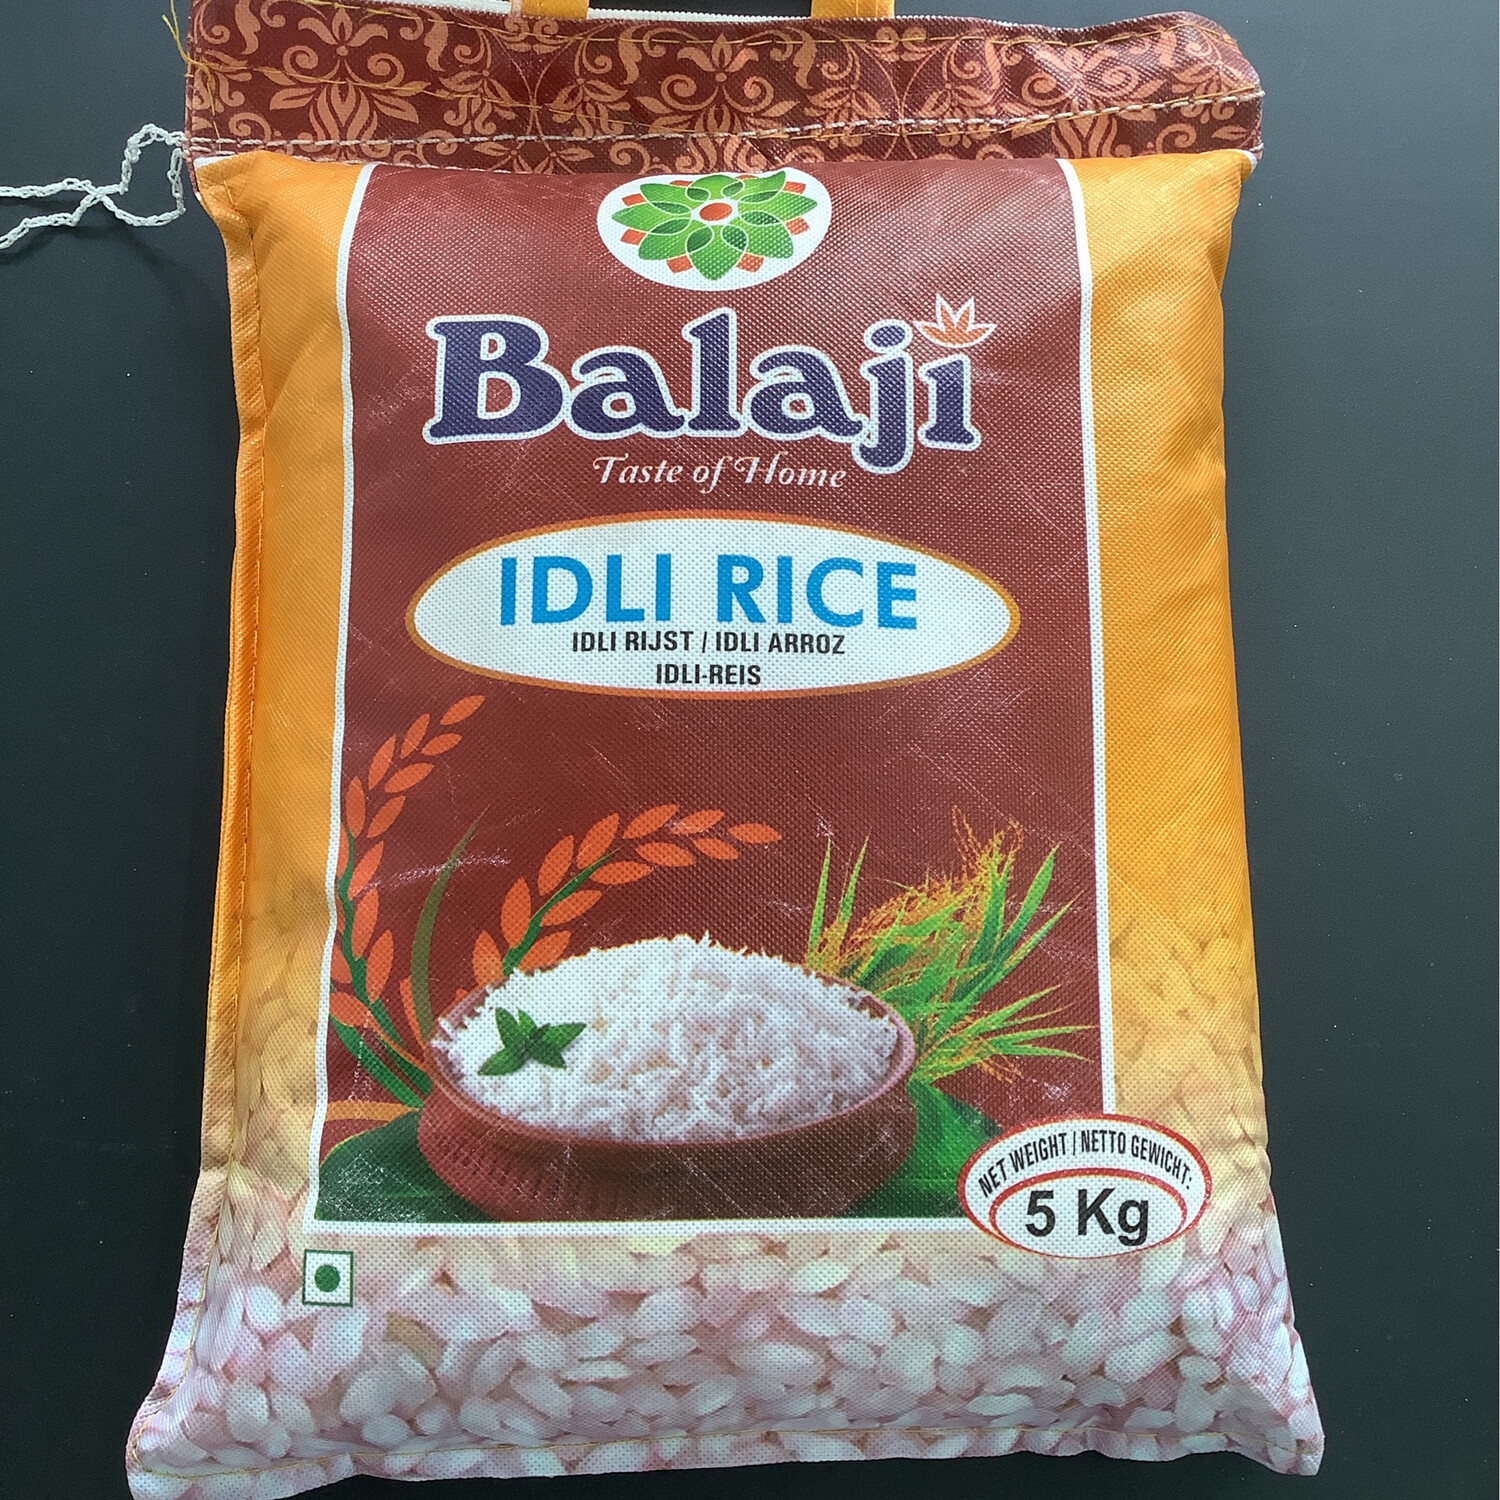 Balaji Idli Rice 5kg